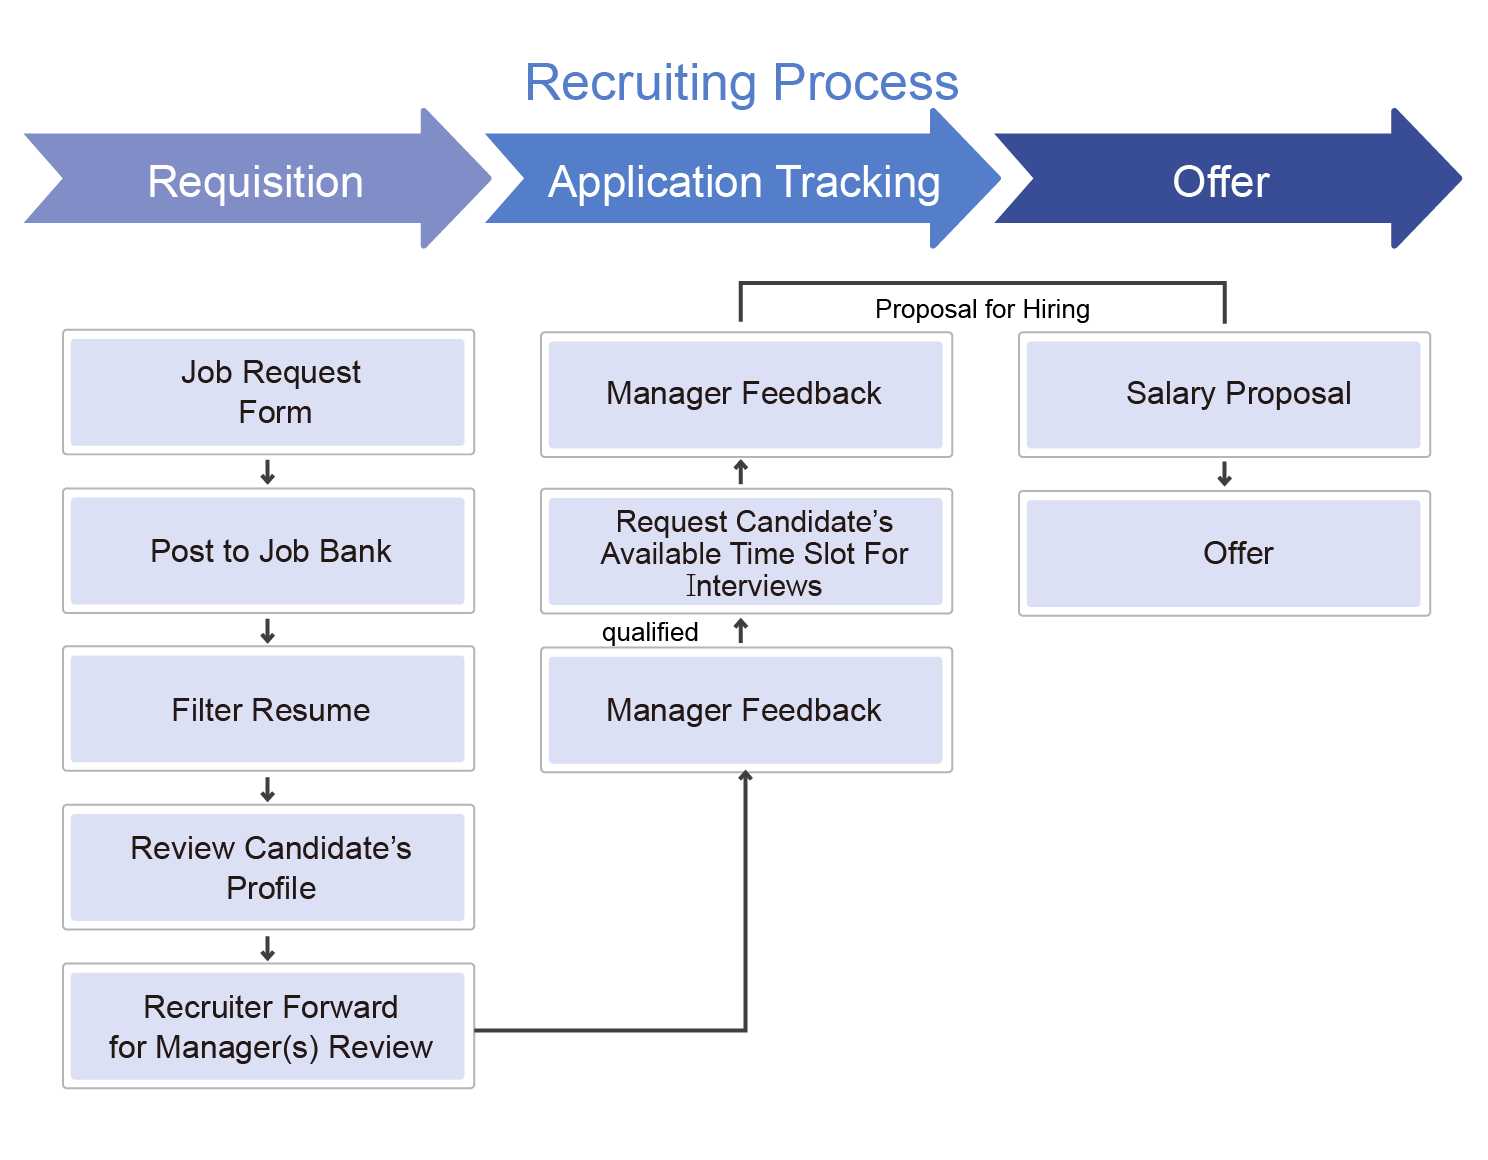 招募管理系統包含應徵資料申請、應徵者管理、面試進度追蹤、聘任通知等作業流程。